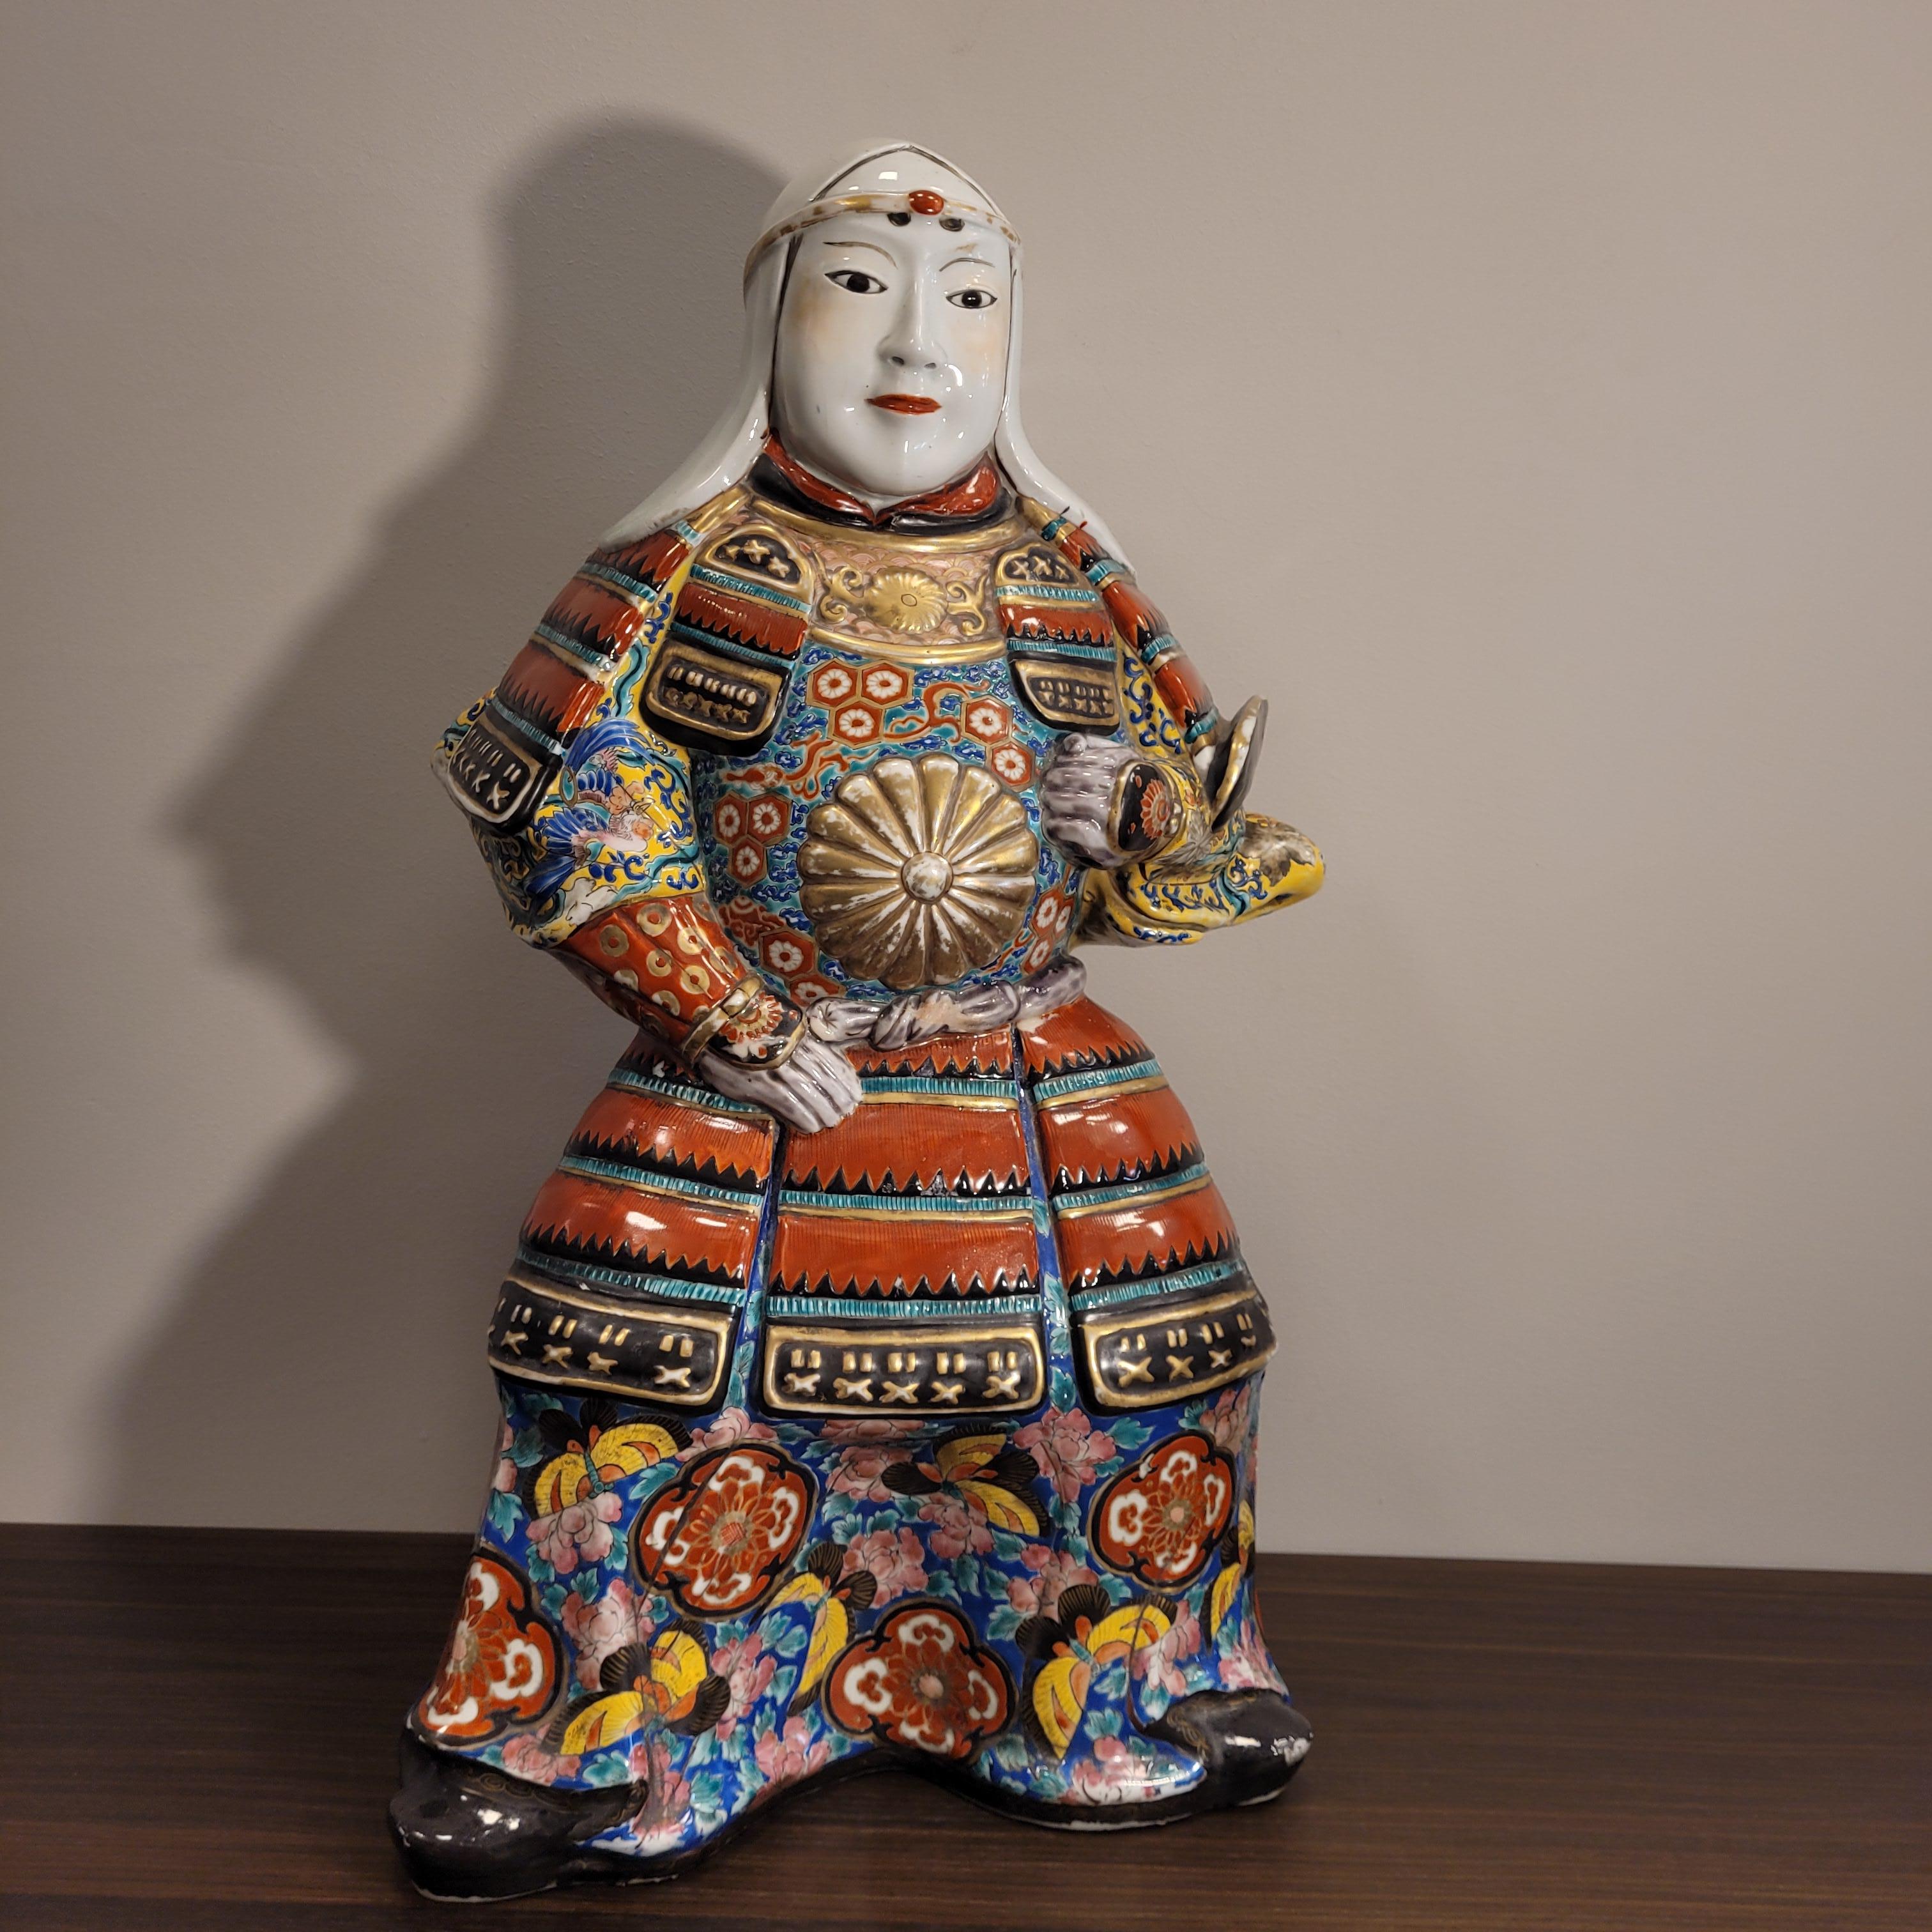 Außergewöhnlicher und großer Samurai aus handbemaltem Porzellan mit dem charakteristischen Habit der Edo-Zeit 1603-1868, als die Tokugawa-Familie Japan regierte. Diese Epoche ist nach der Stadt Edo, dem heutigen Tokio, benannt.
Der Ursprung der